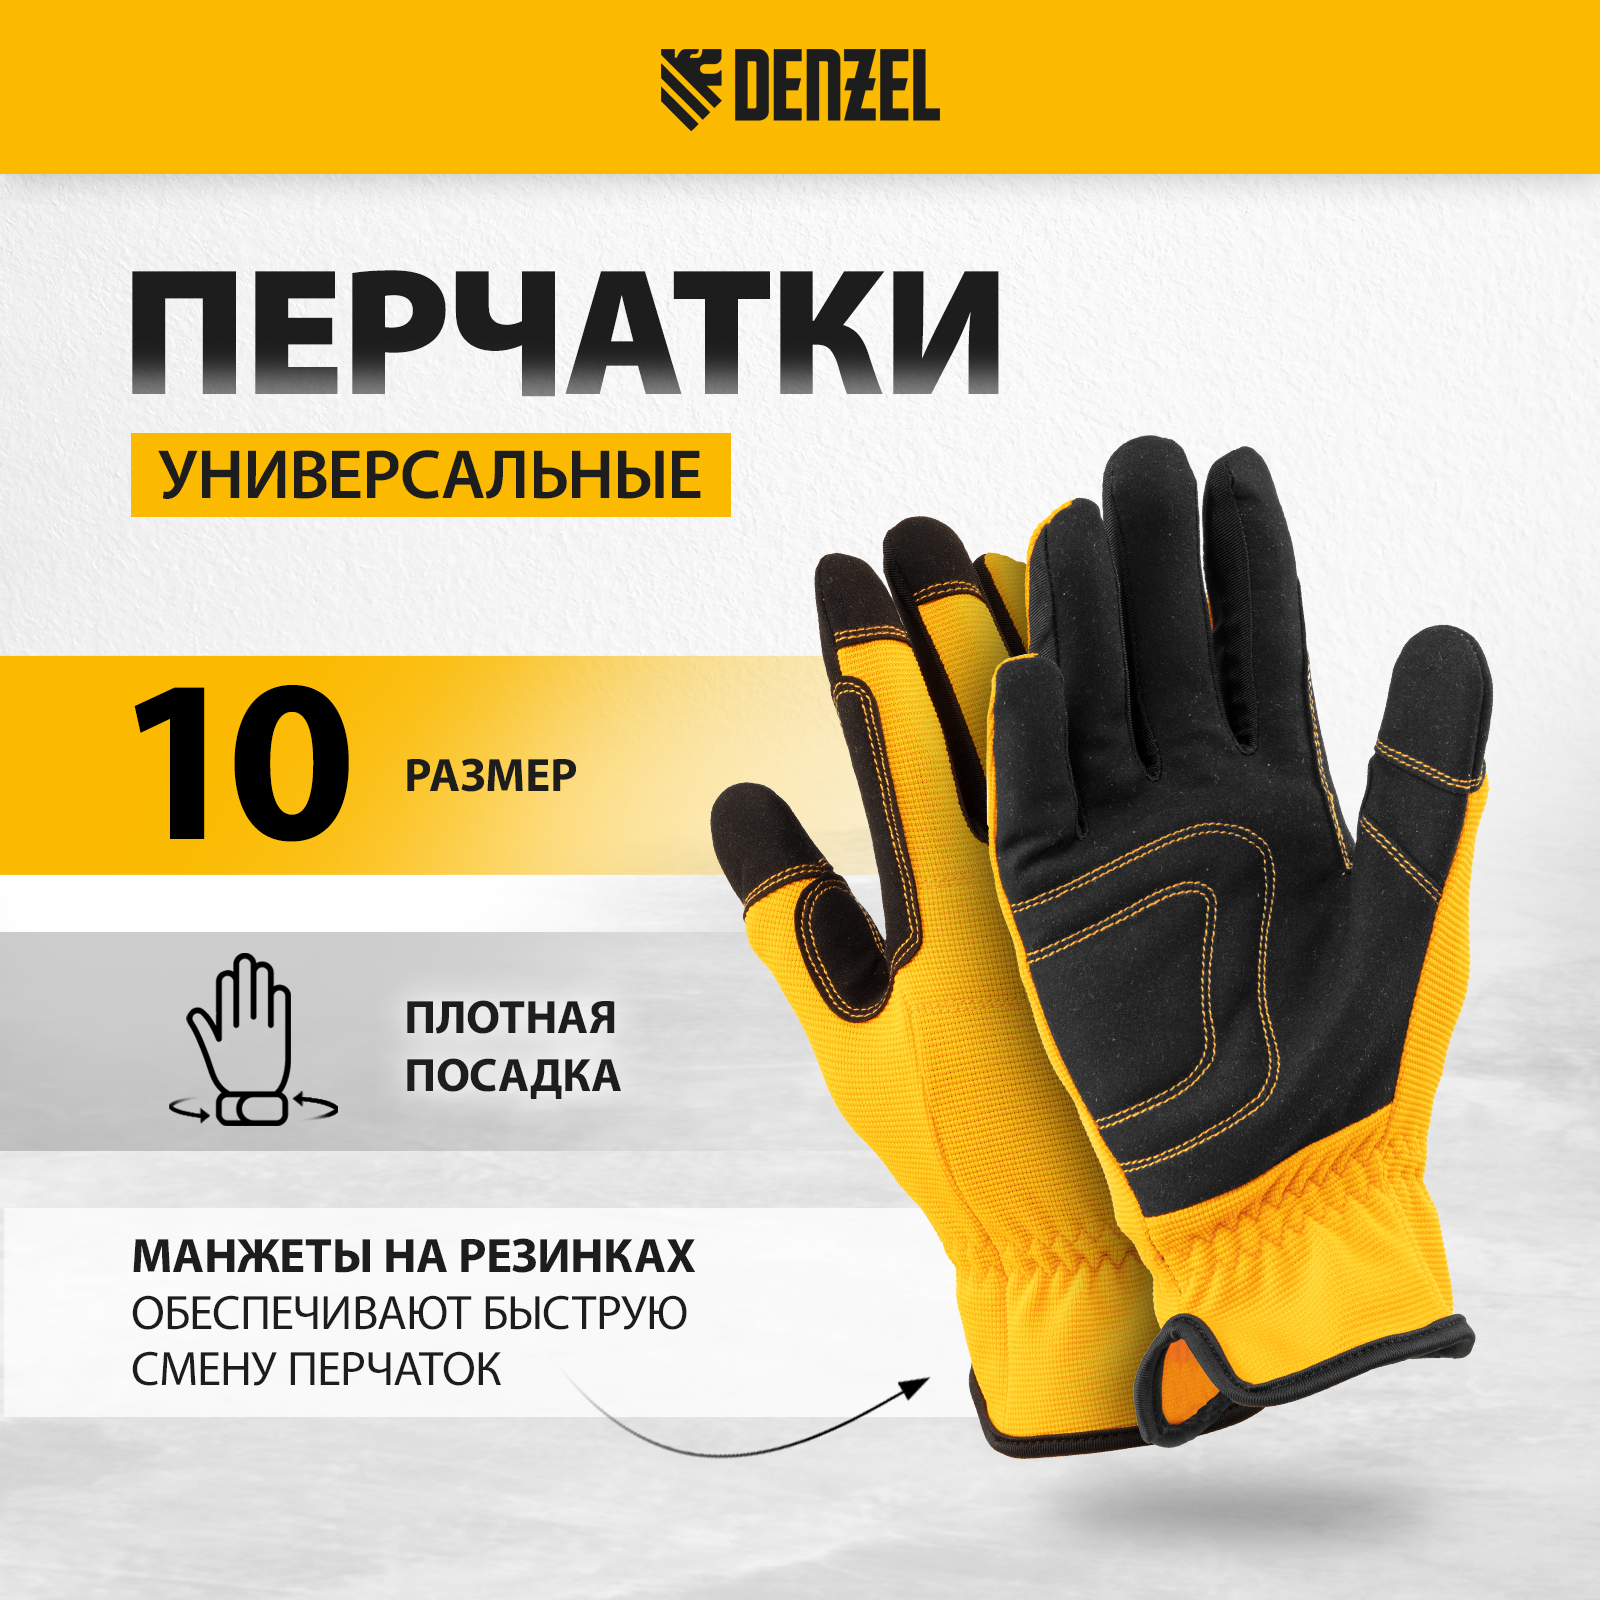 Перчатки универсальные DENZEL размер 10 67997 перчатки гк спецобъединение защита зима пер 209